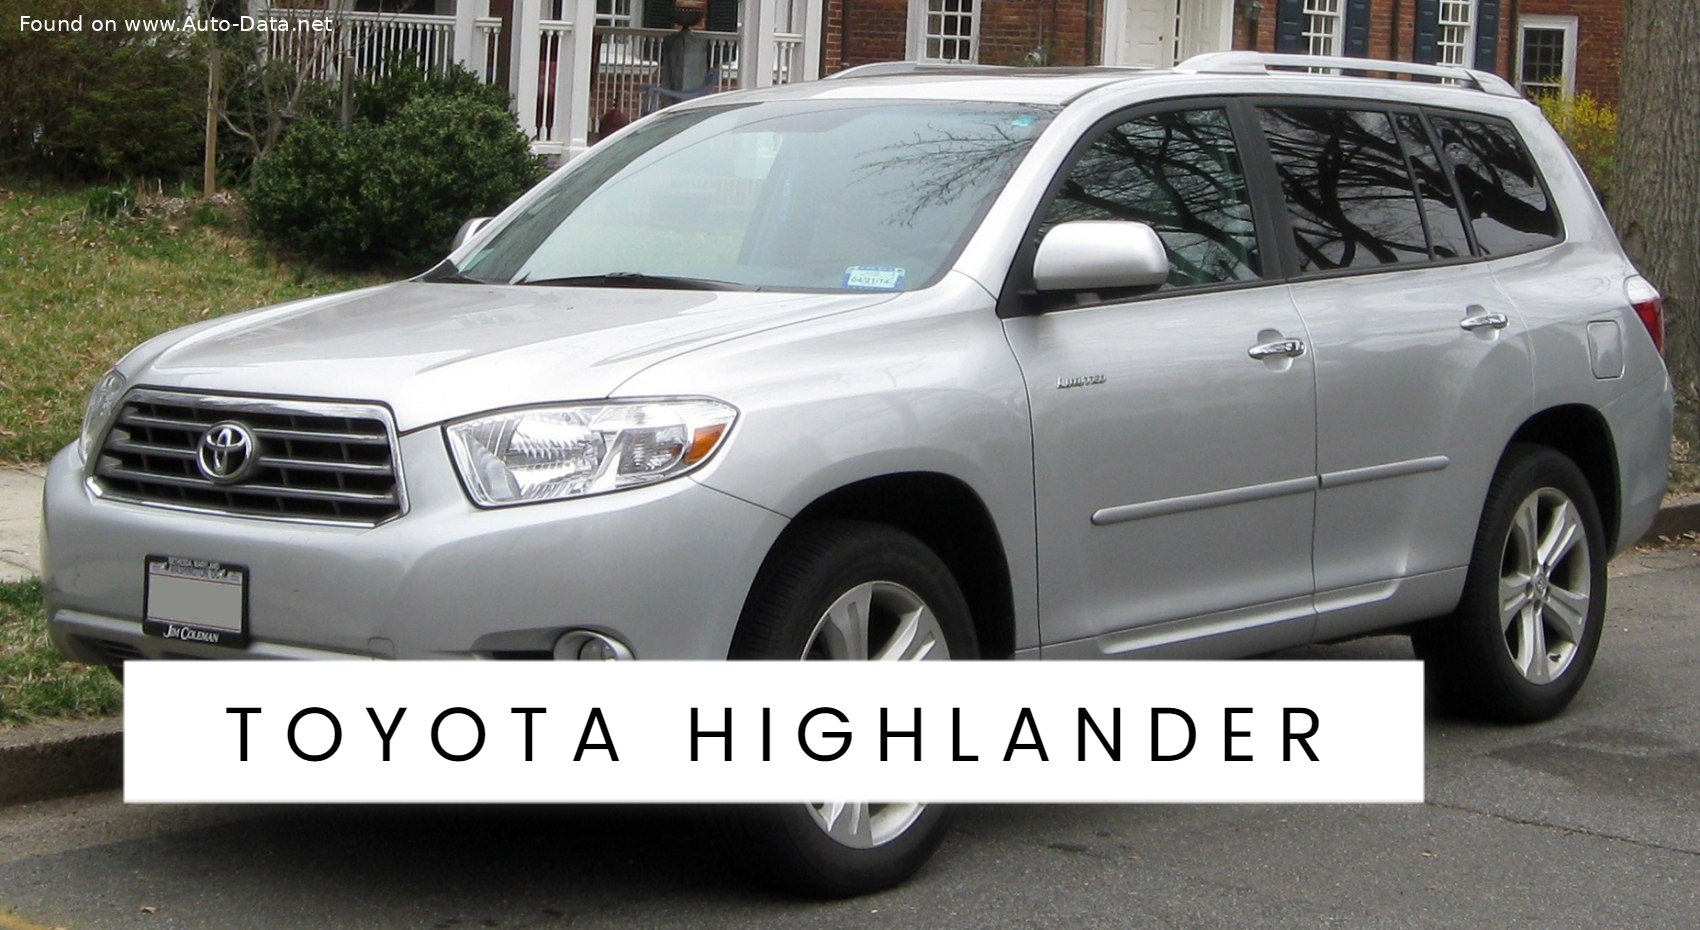 History of Toyota Highlander